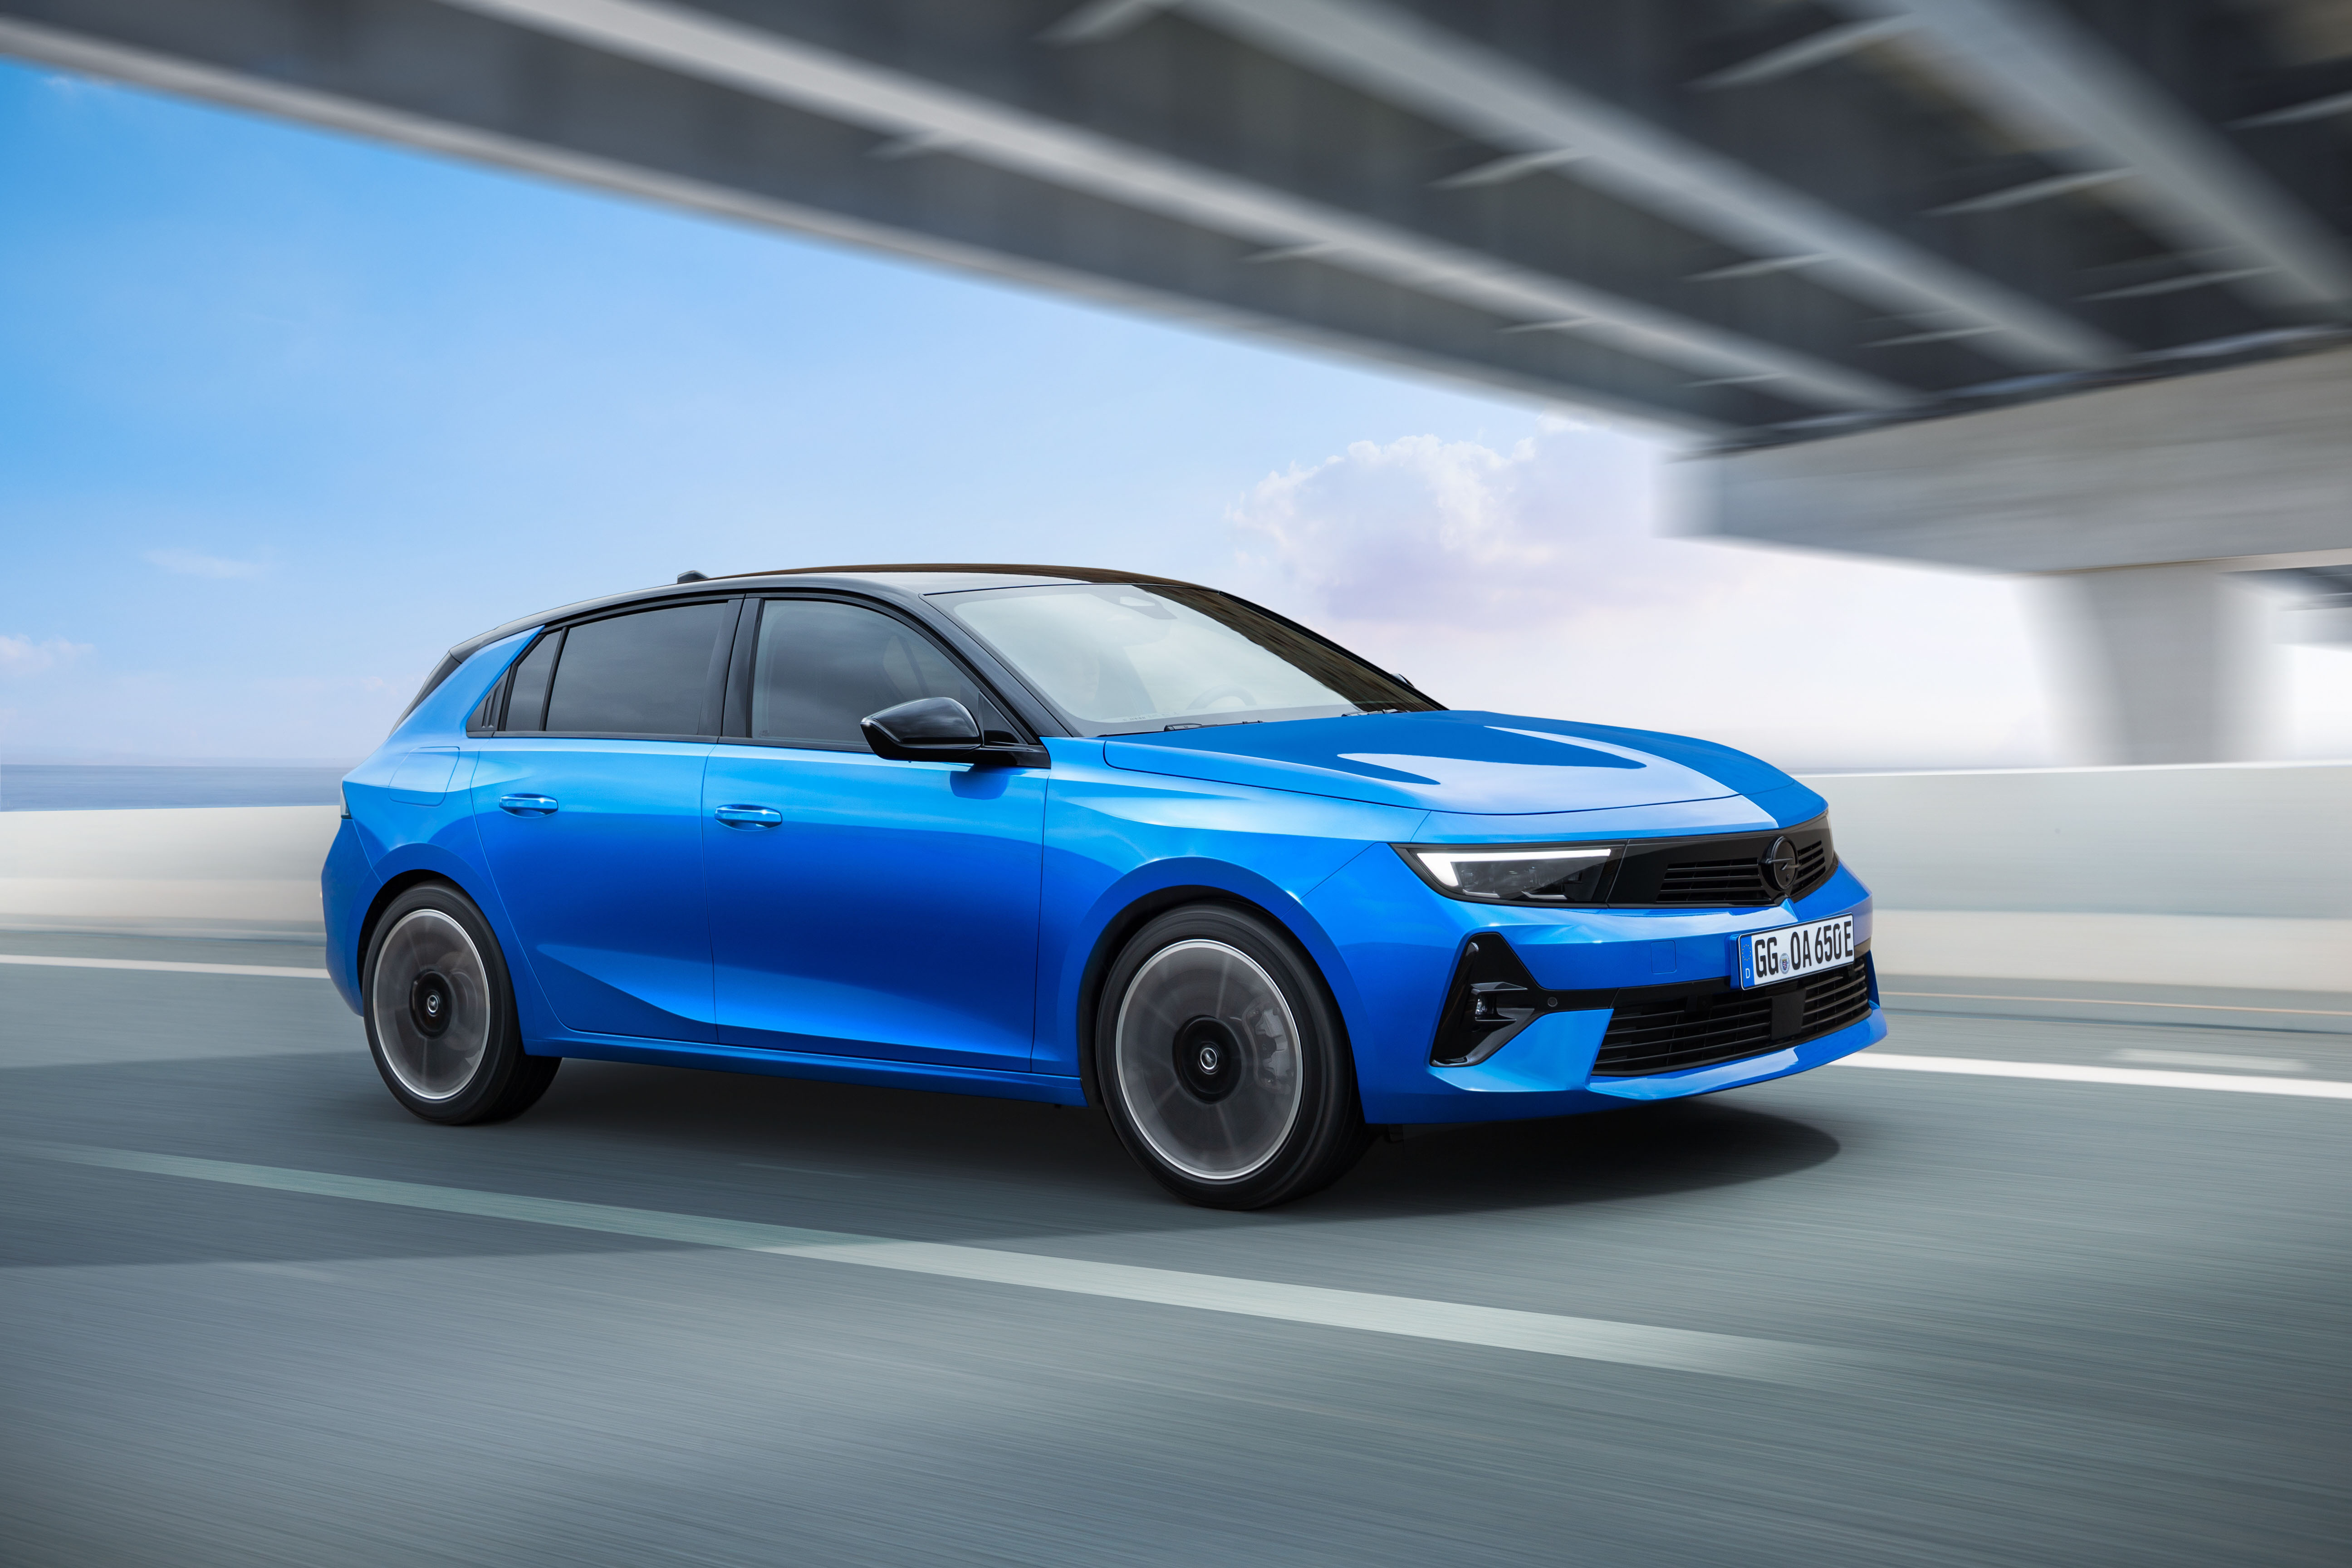 Opel modellerinde Mayıs ayı teklifleri açıklandı